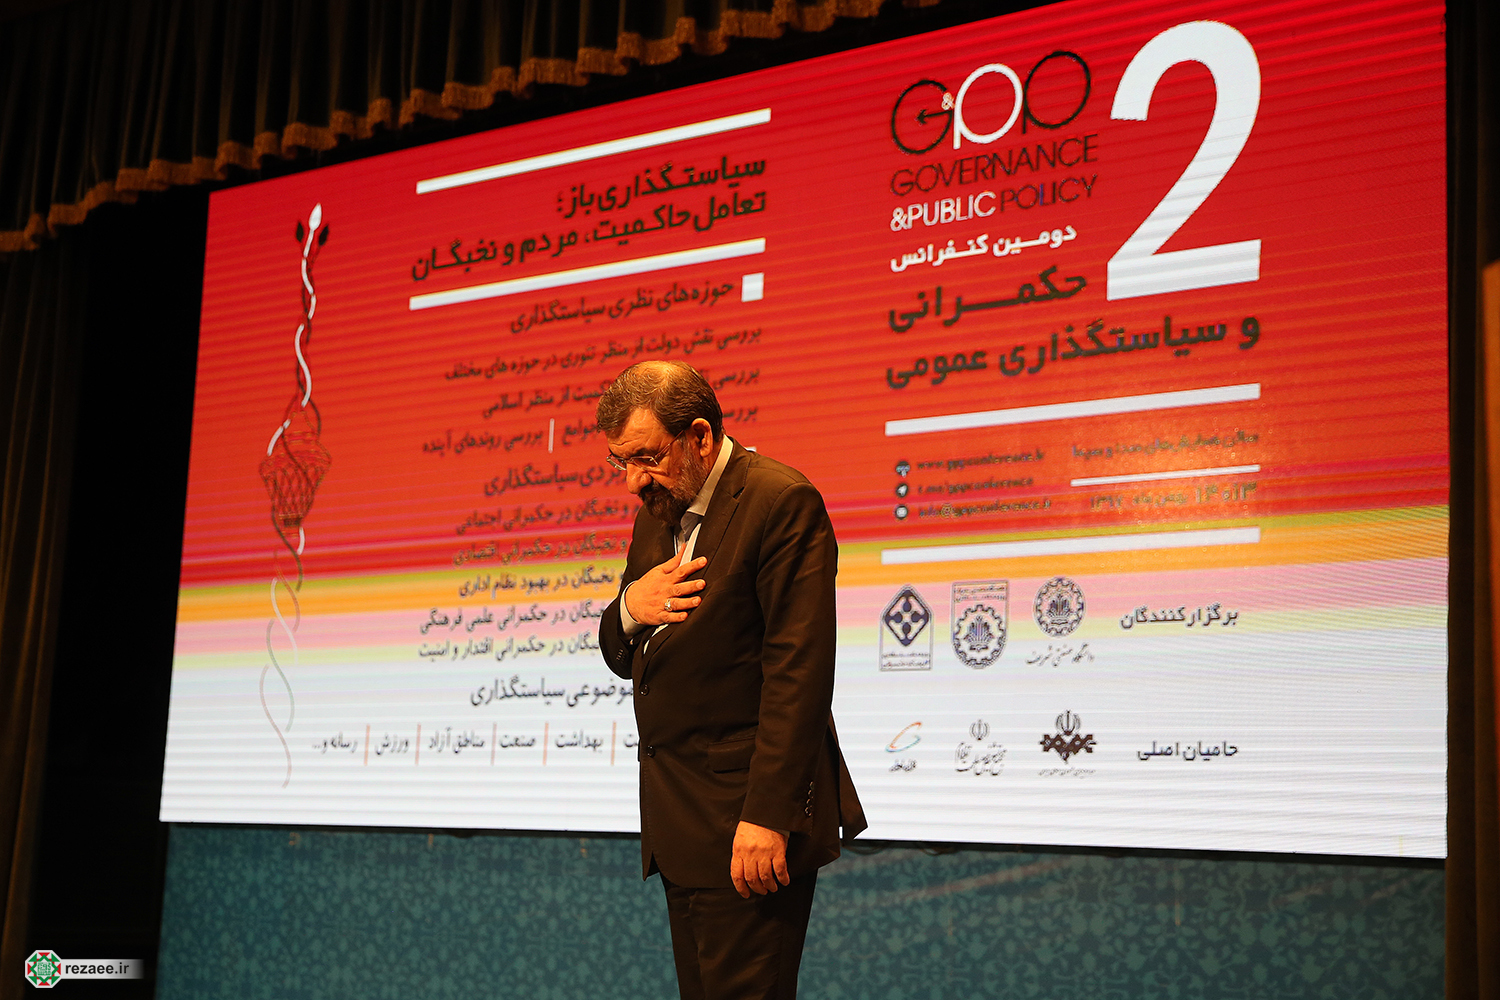 گزارش تصویری حضور دکتر محسن رضایی در کنفرانس حکمرانی و سیاستگذاری عمومی